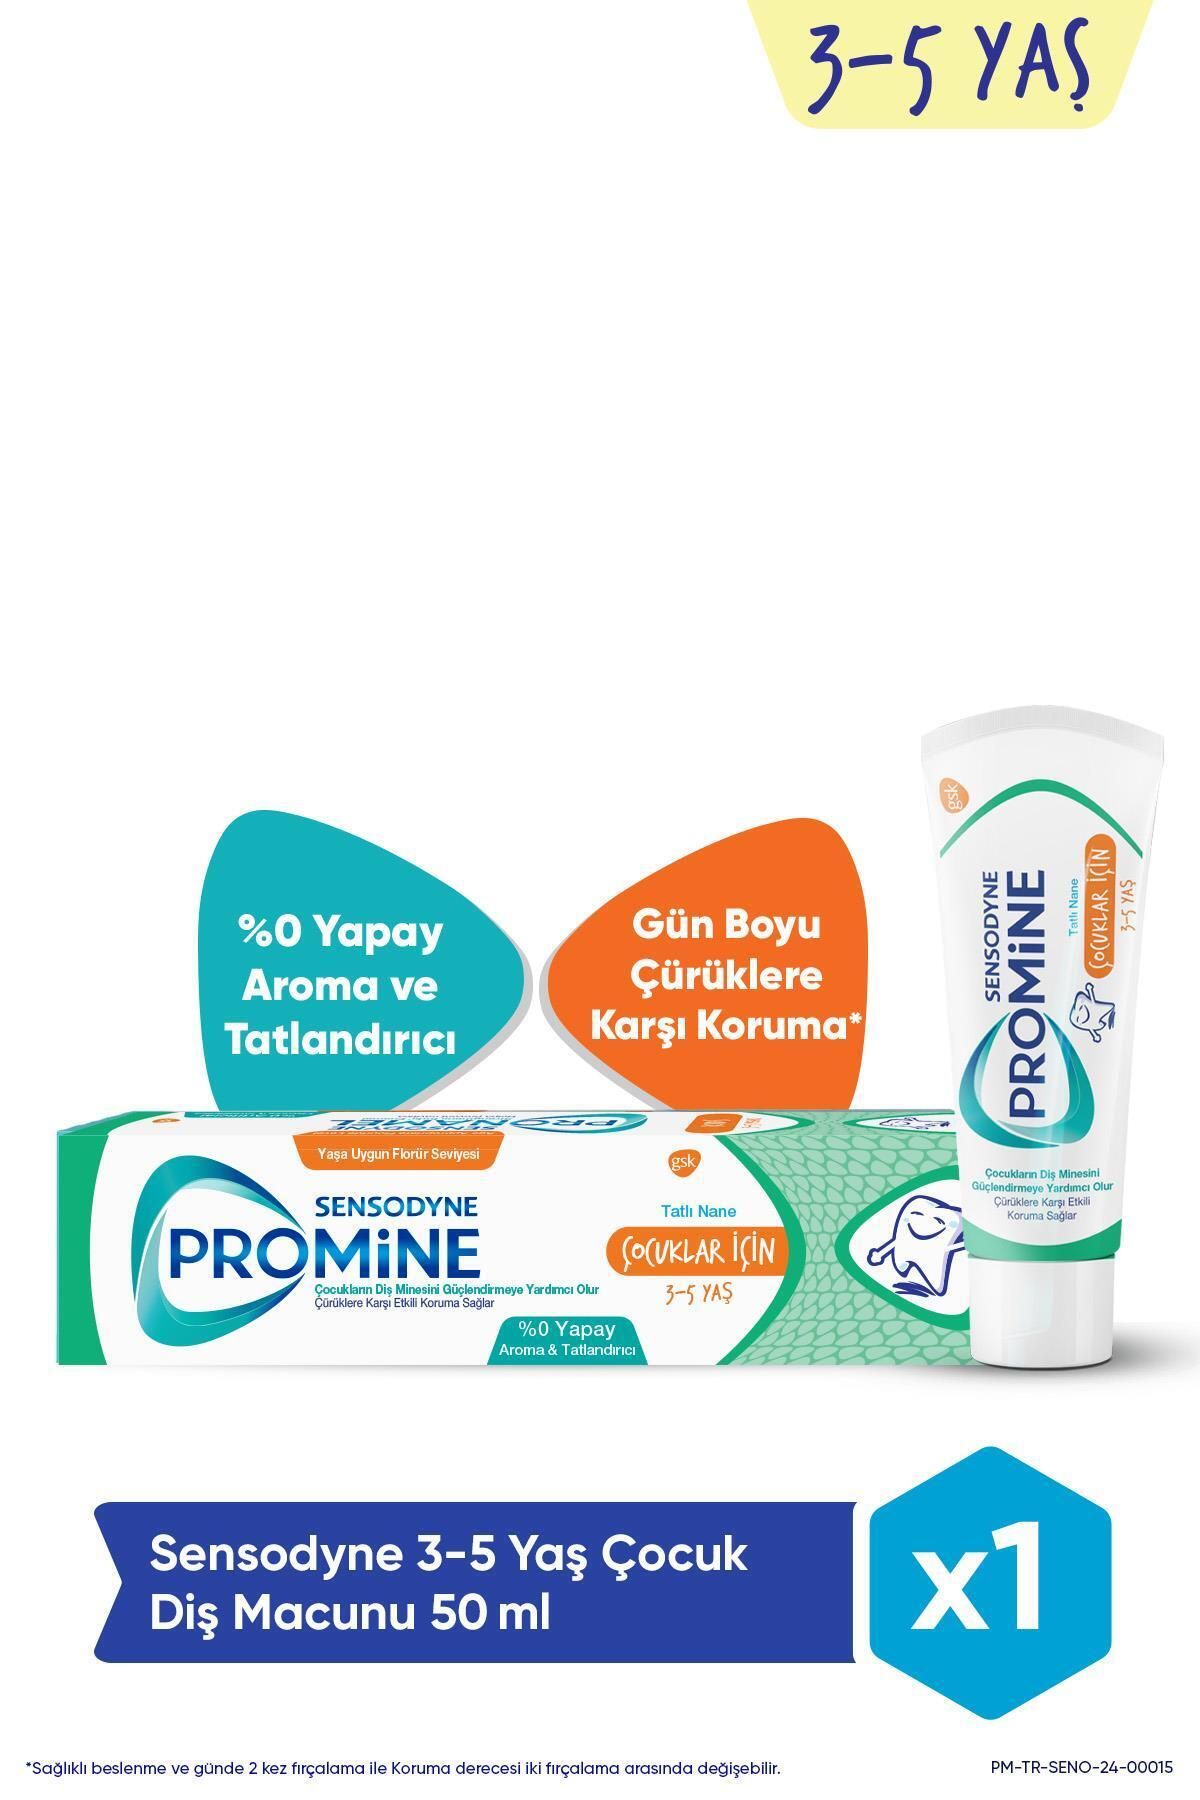 Sensodyne Promine 3-5 Yaş Çocuklar İçin Gün Boyu Çürüklere Karşı Koruyan Şekersiz Diş Macunu 50ml 8681291341038